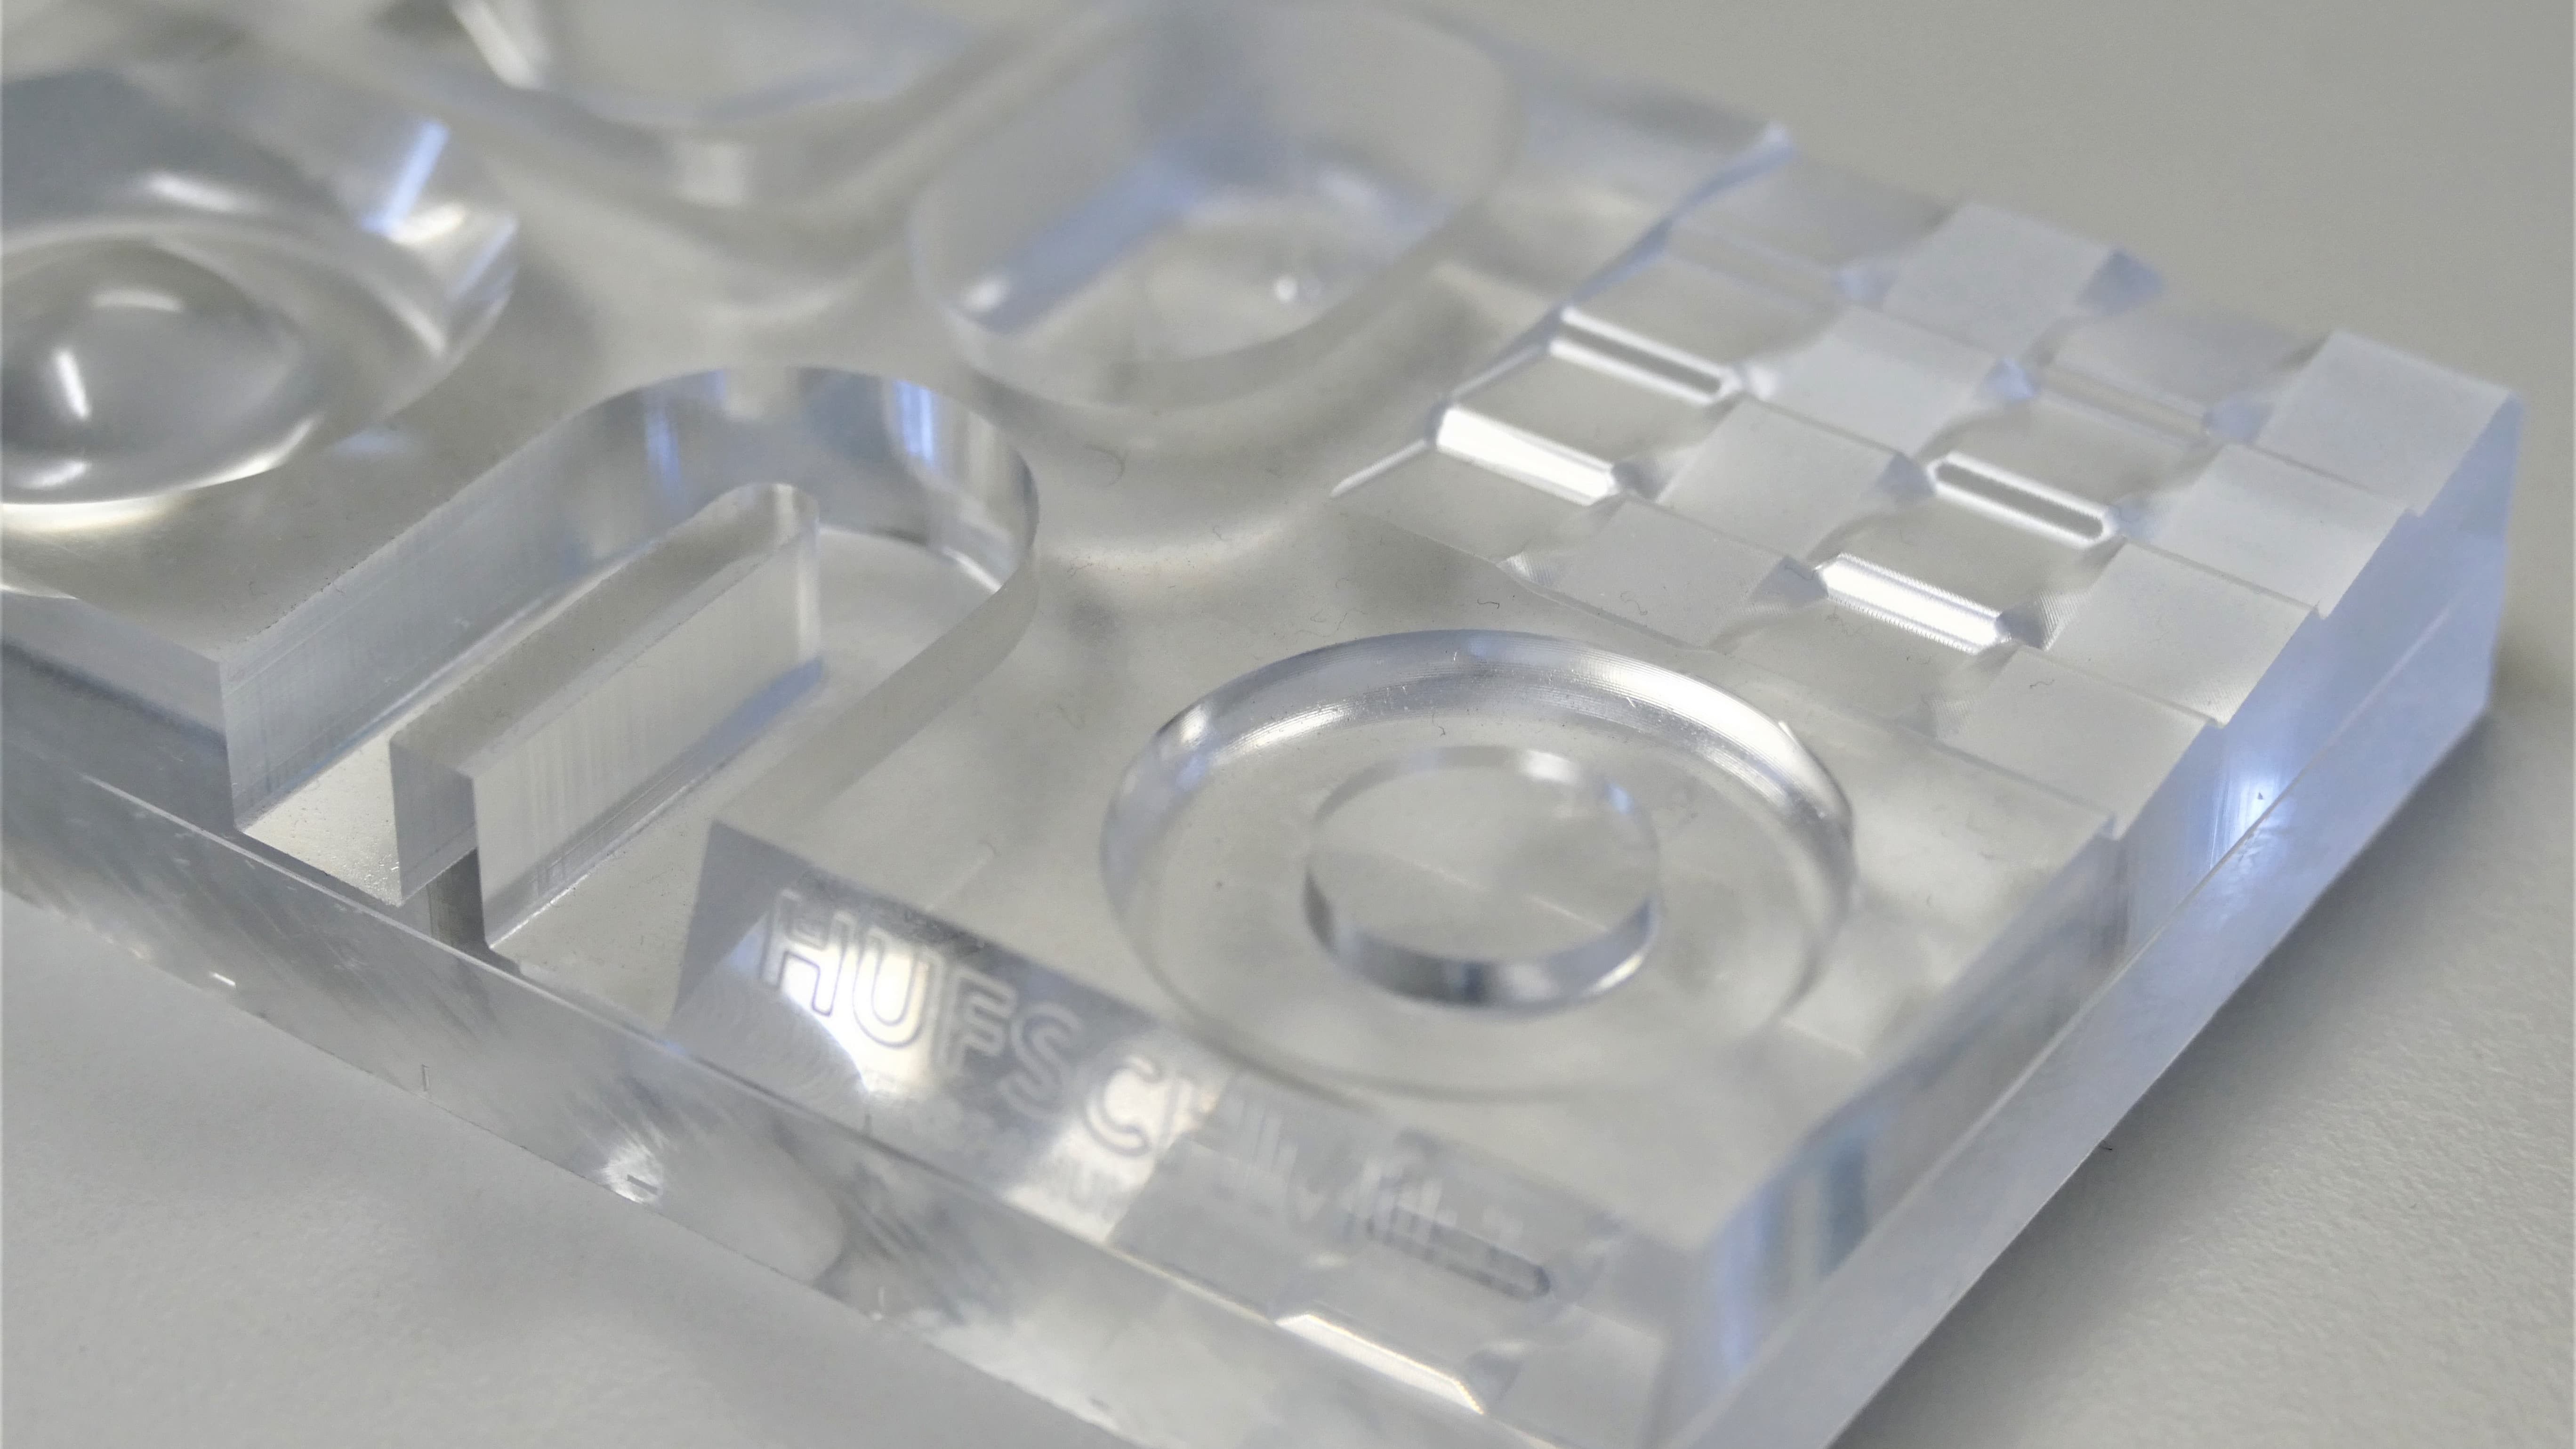 Kristallklare Oberflächen ohne zusätzliches Polieren bei Plexiglas